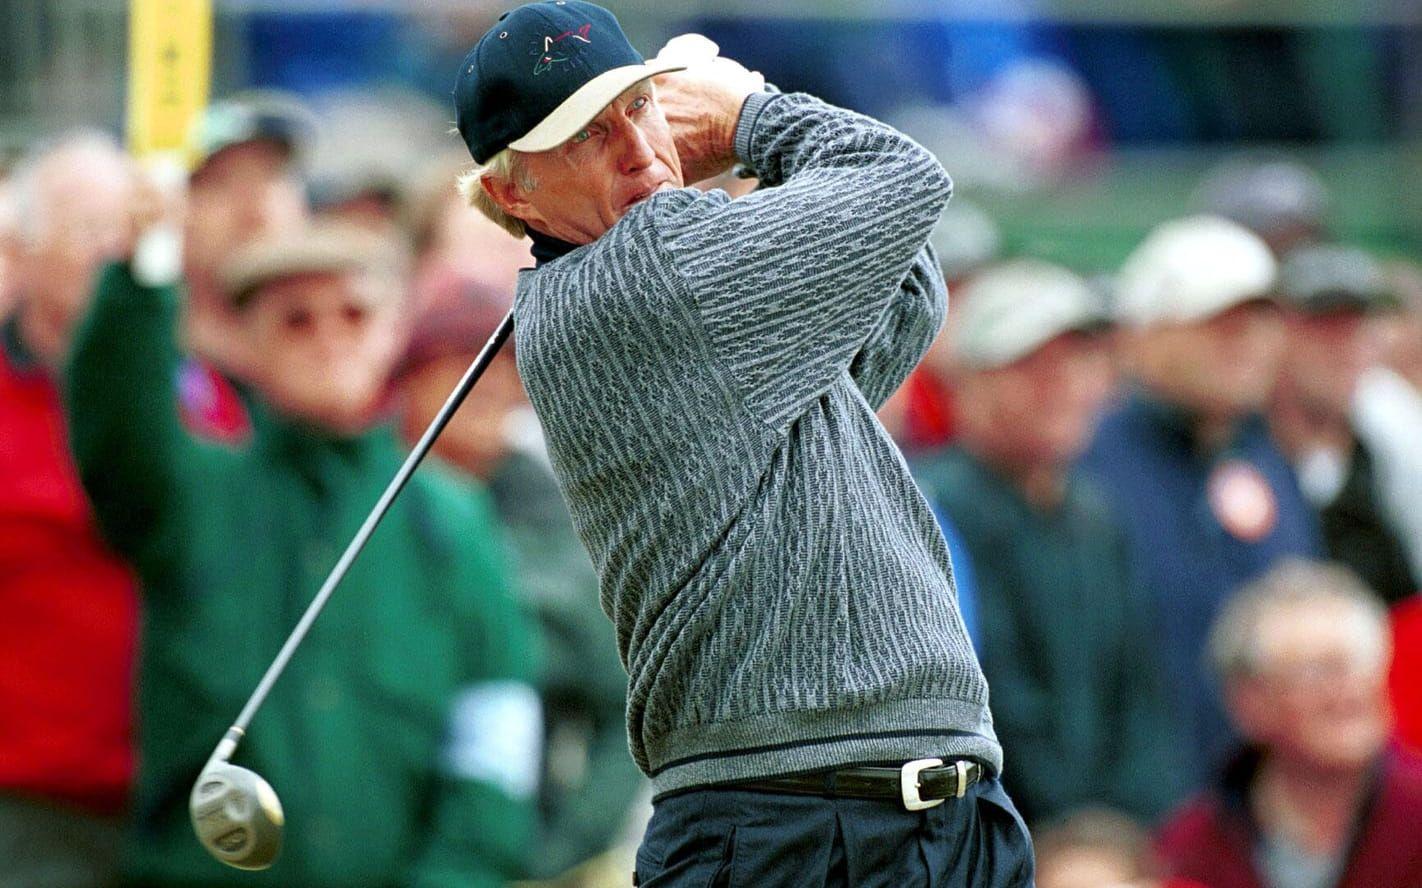 Greg Norman, australiensisk golfspelare: "Jag har mycket att tacka mina föräldrar för, speciellt min mamma och pappa." Foto: Bildbyrån